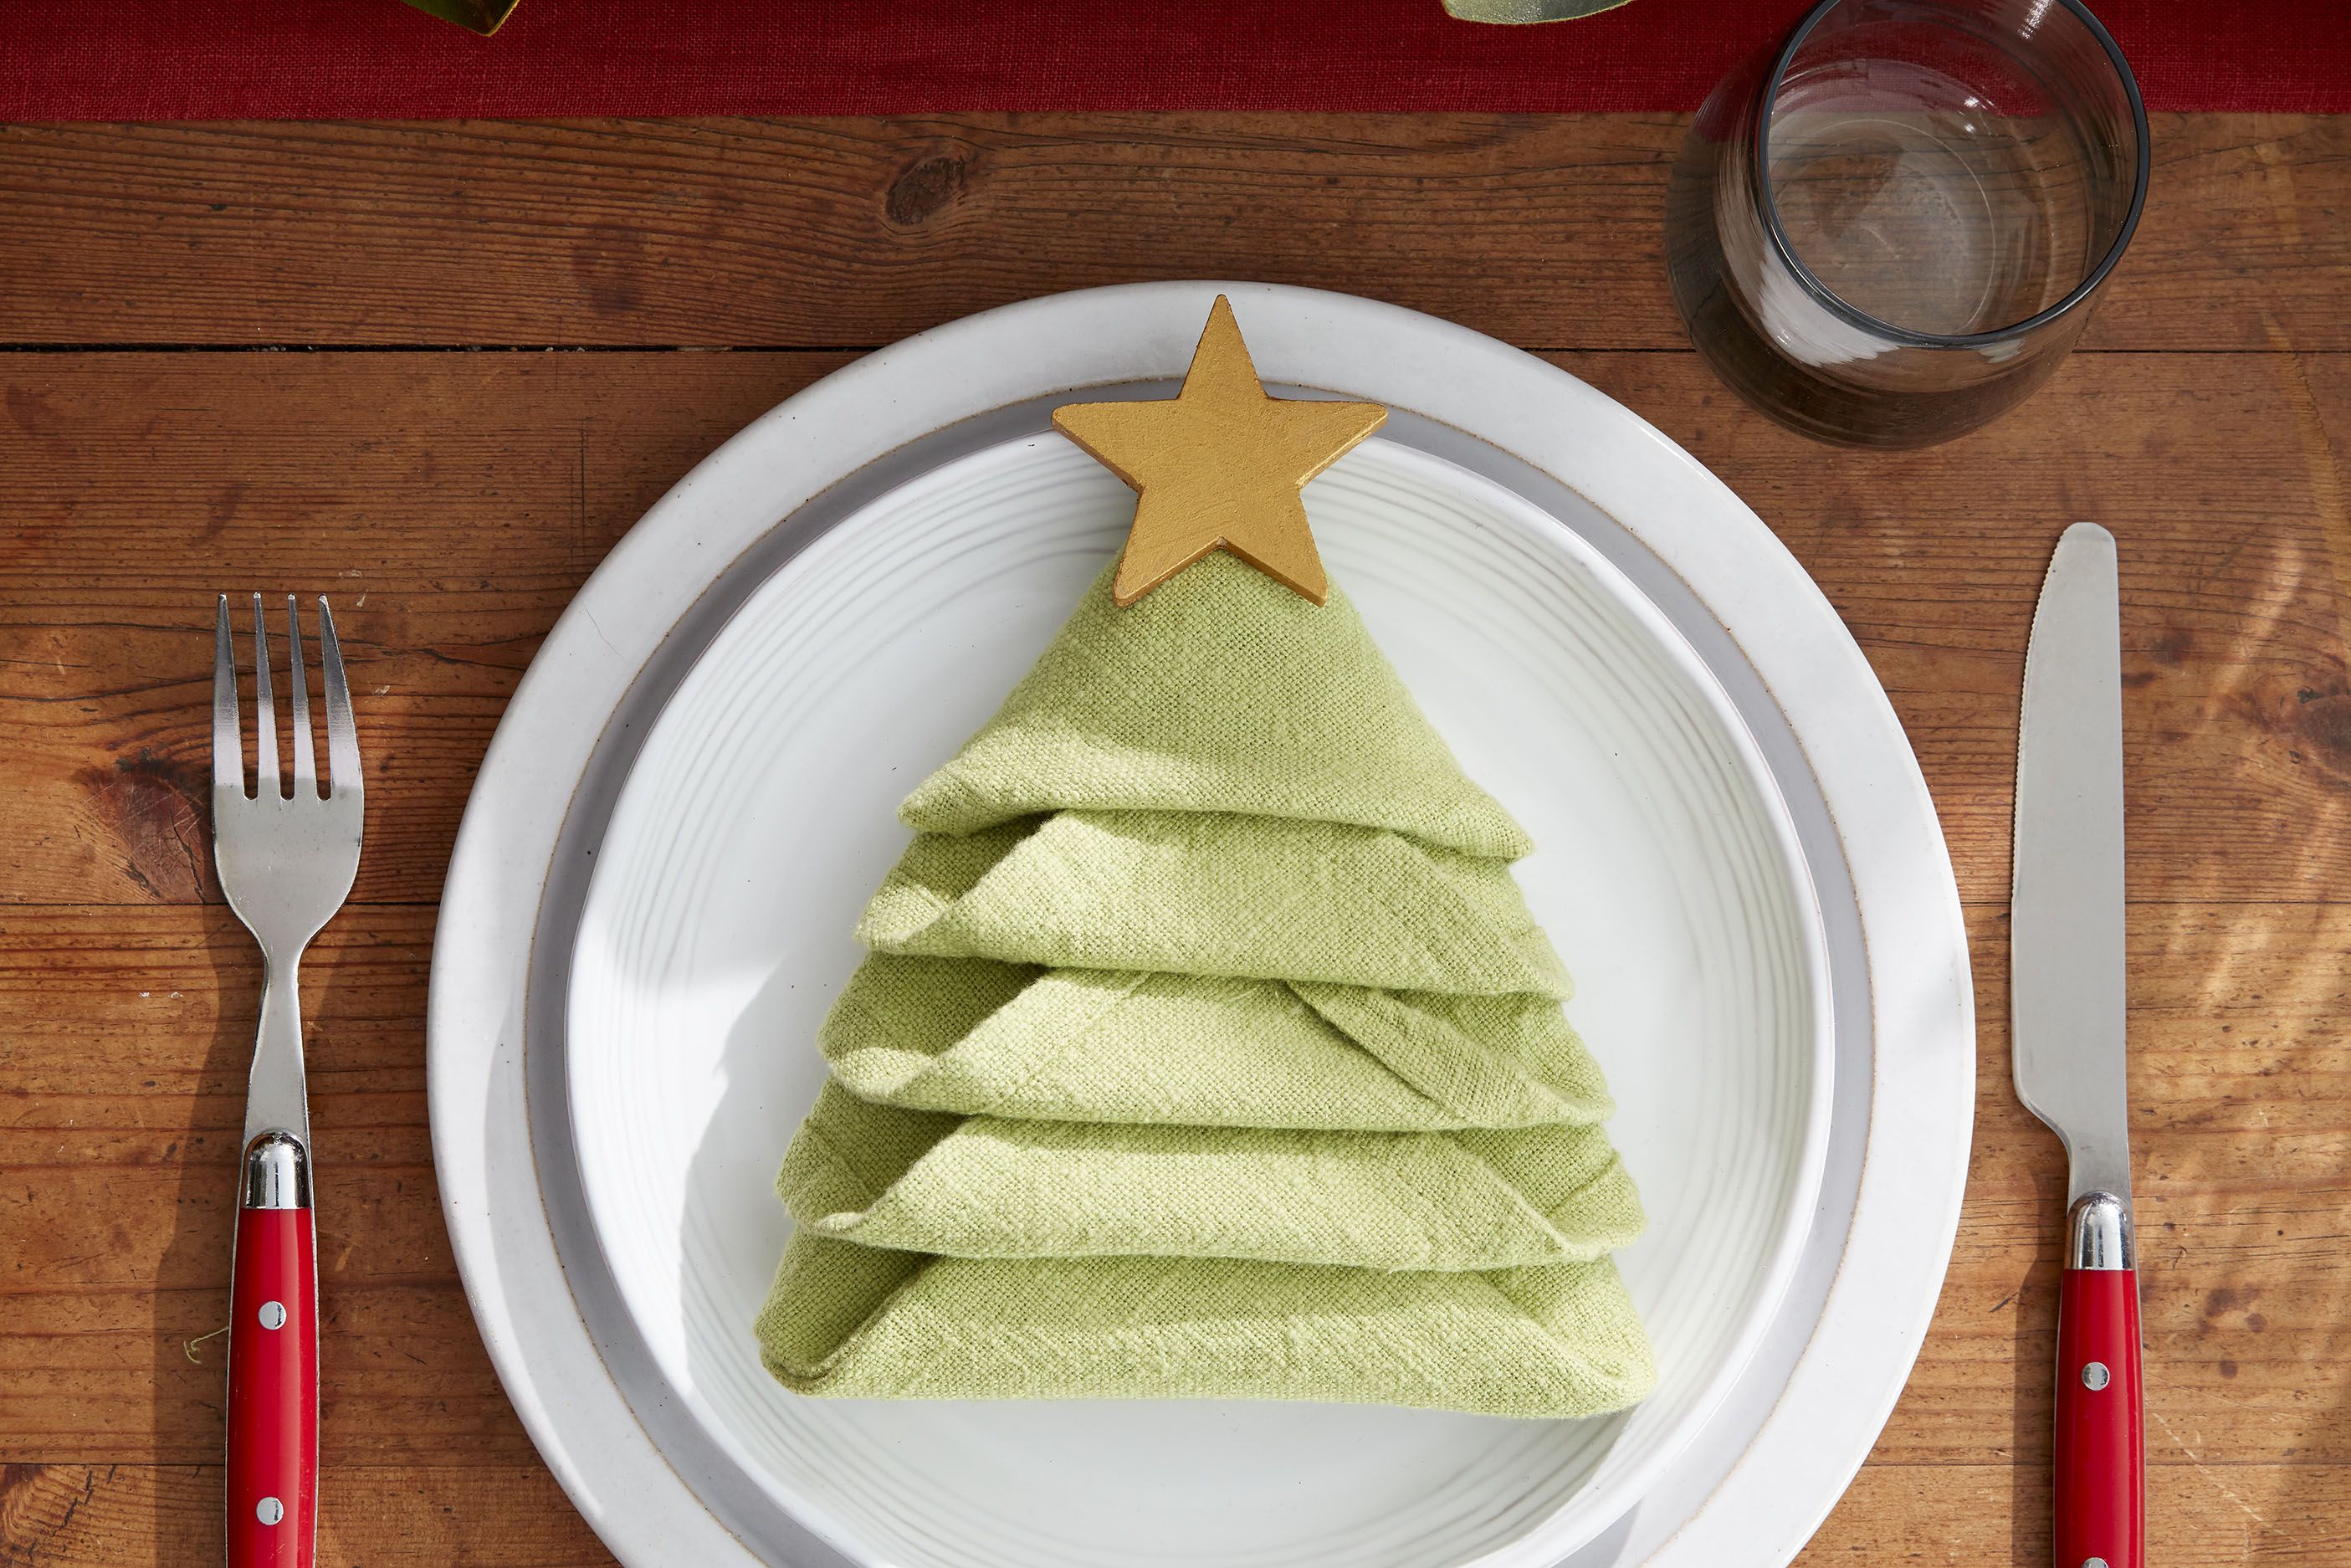 How to Make a Christmas Tree Napkin Fold - All the Steps to Folding a Napkin Into a DIY Christmas Tree